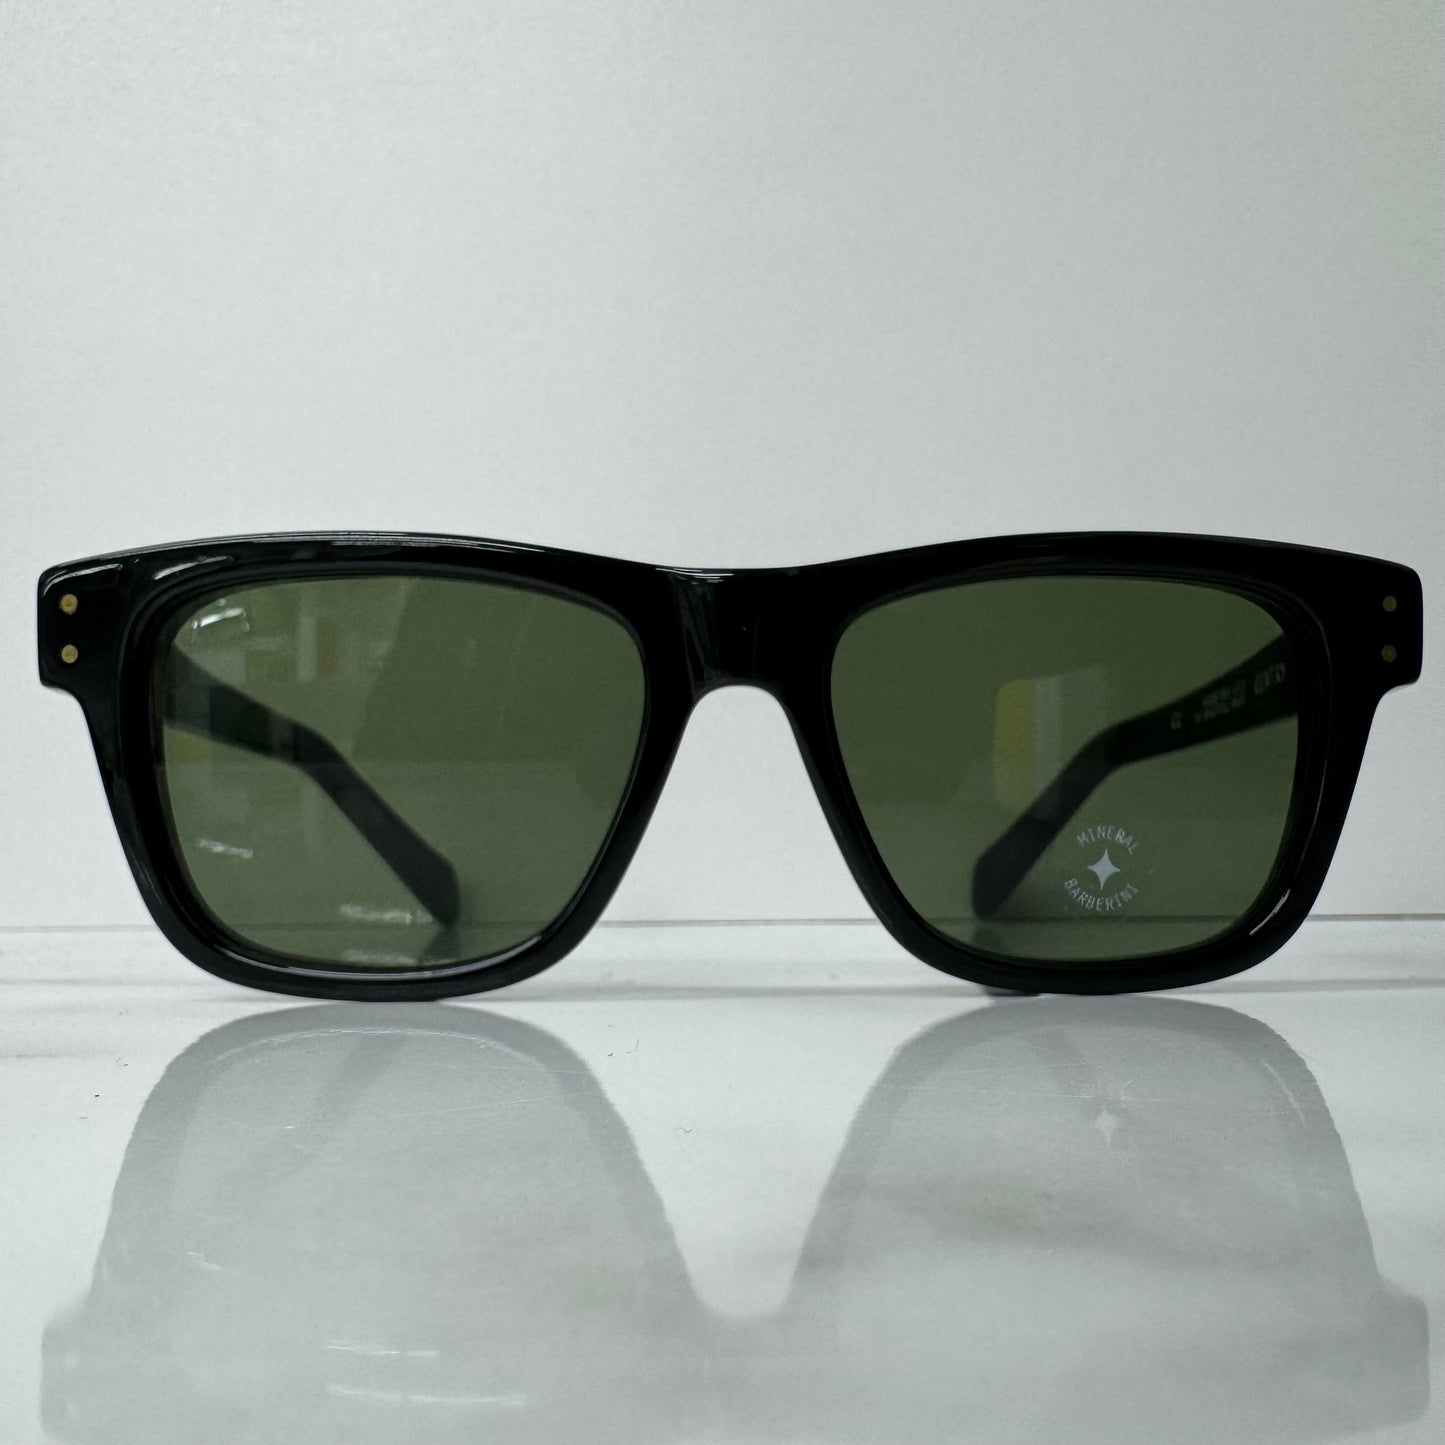 Kaleos Gentry Sunglasses C001 Unisex Square Black & Green Tinted Acetate Glasses